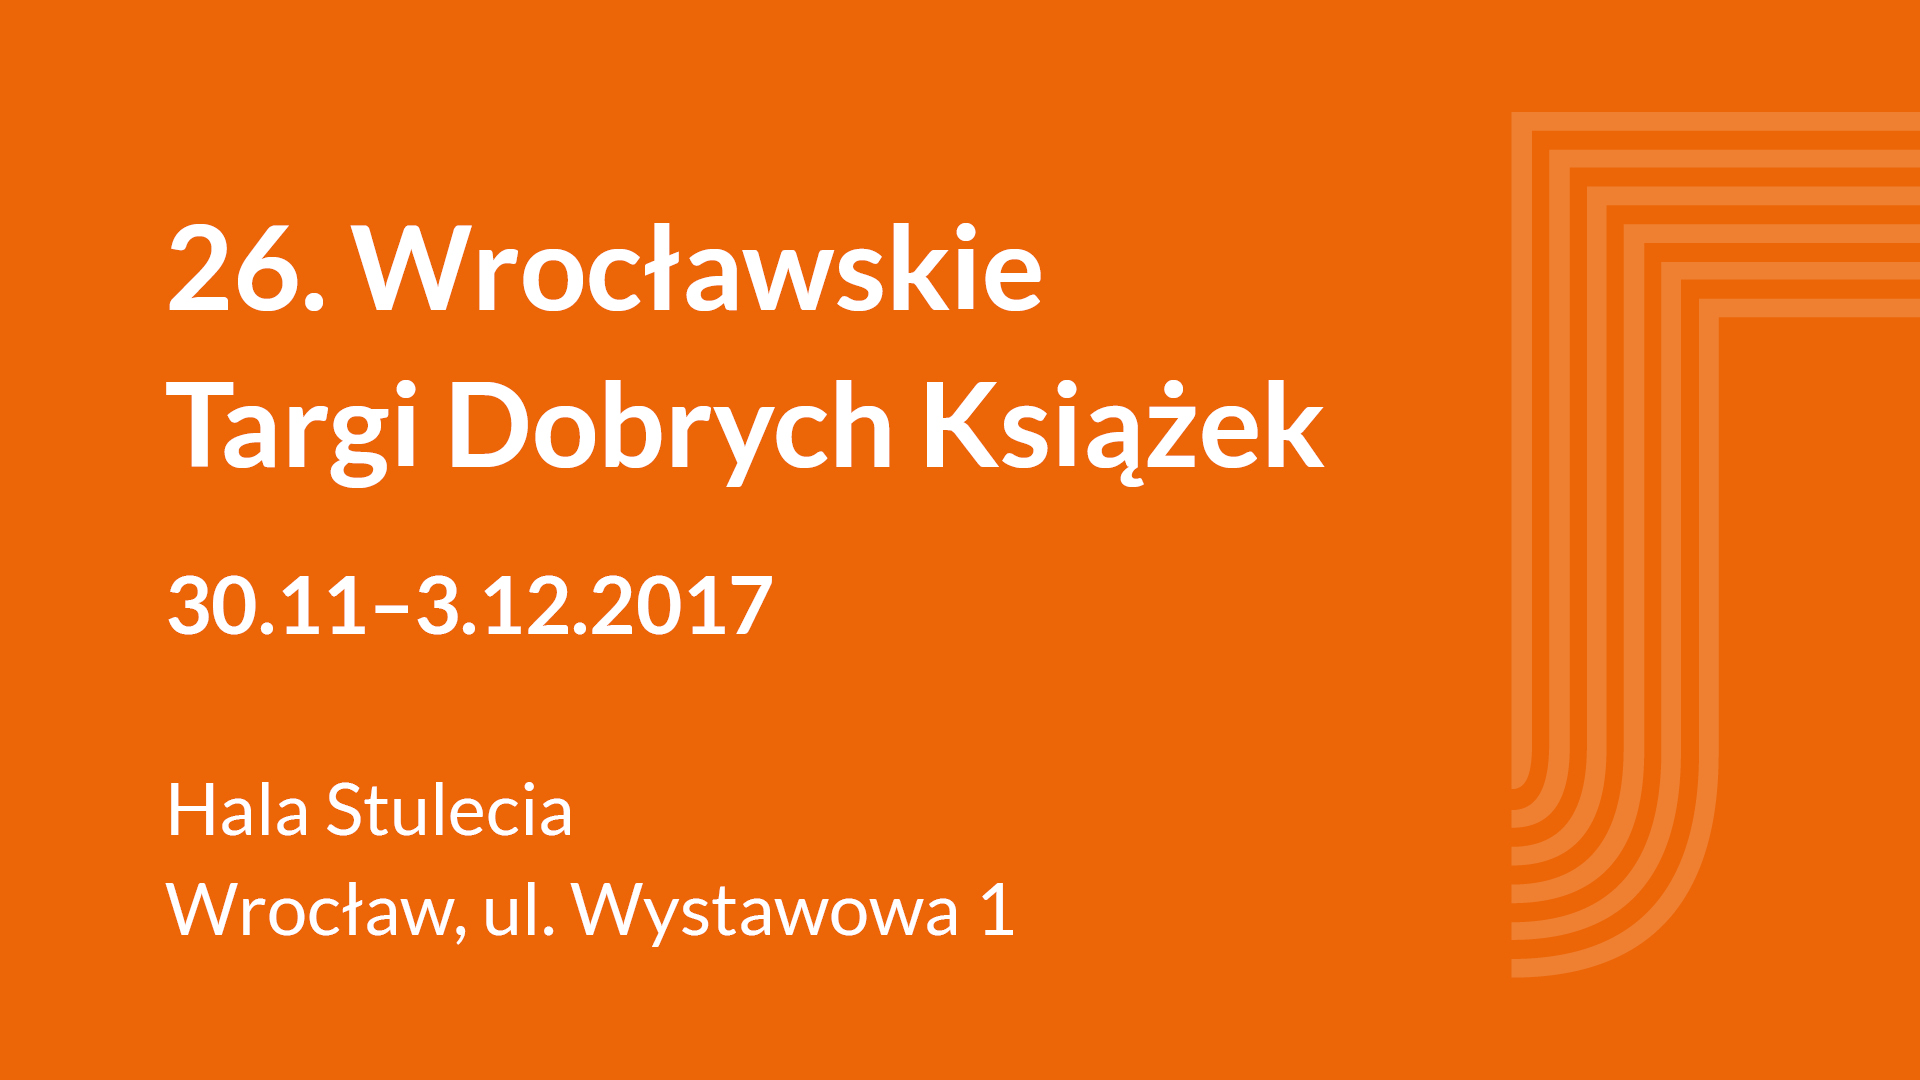 26. Wrocławskie Promocje Dobrych Książek,